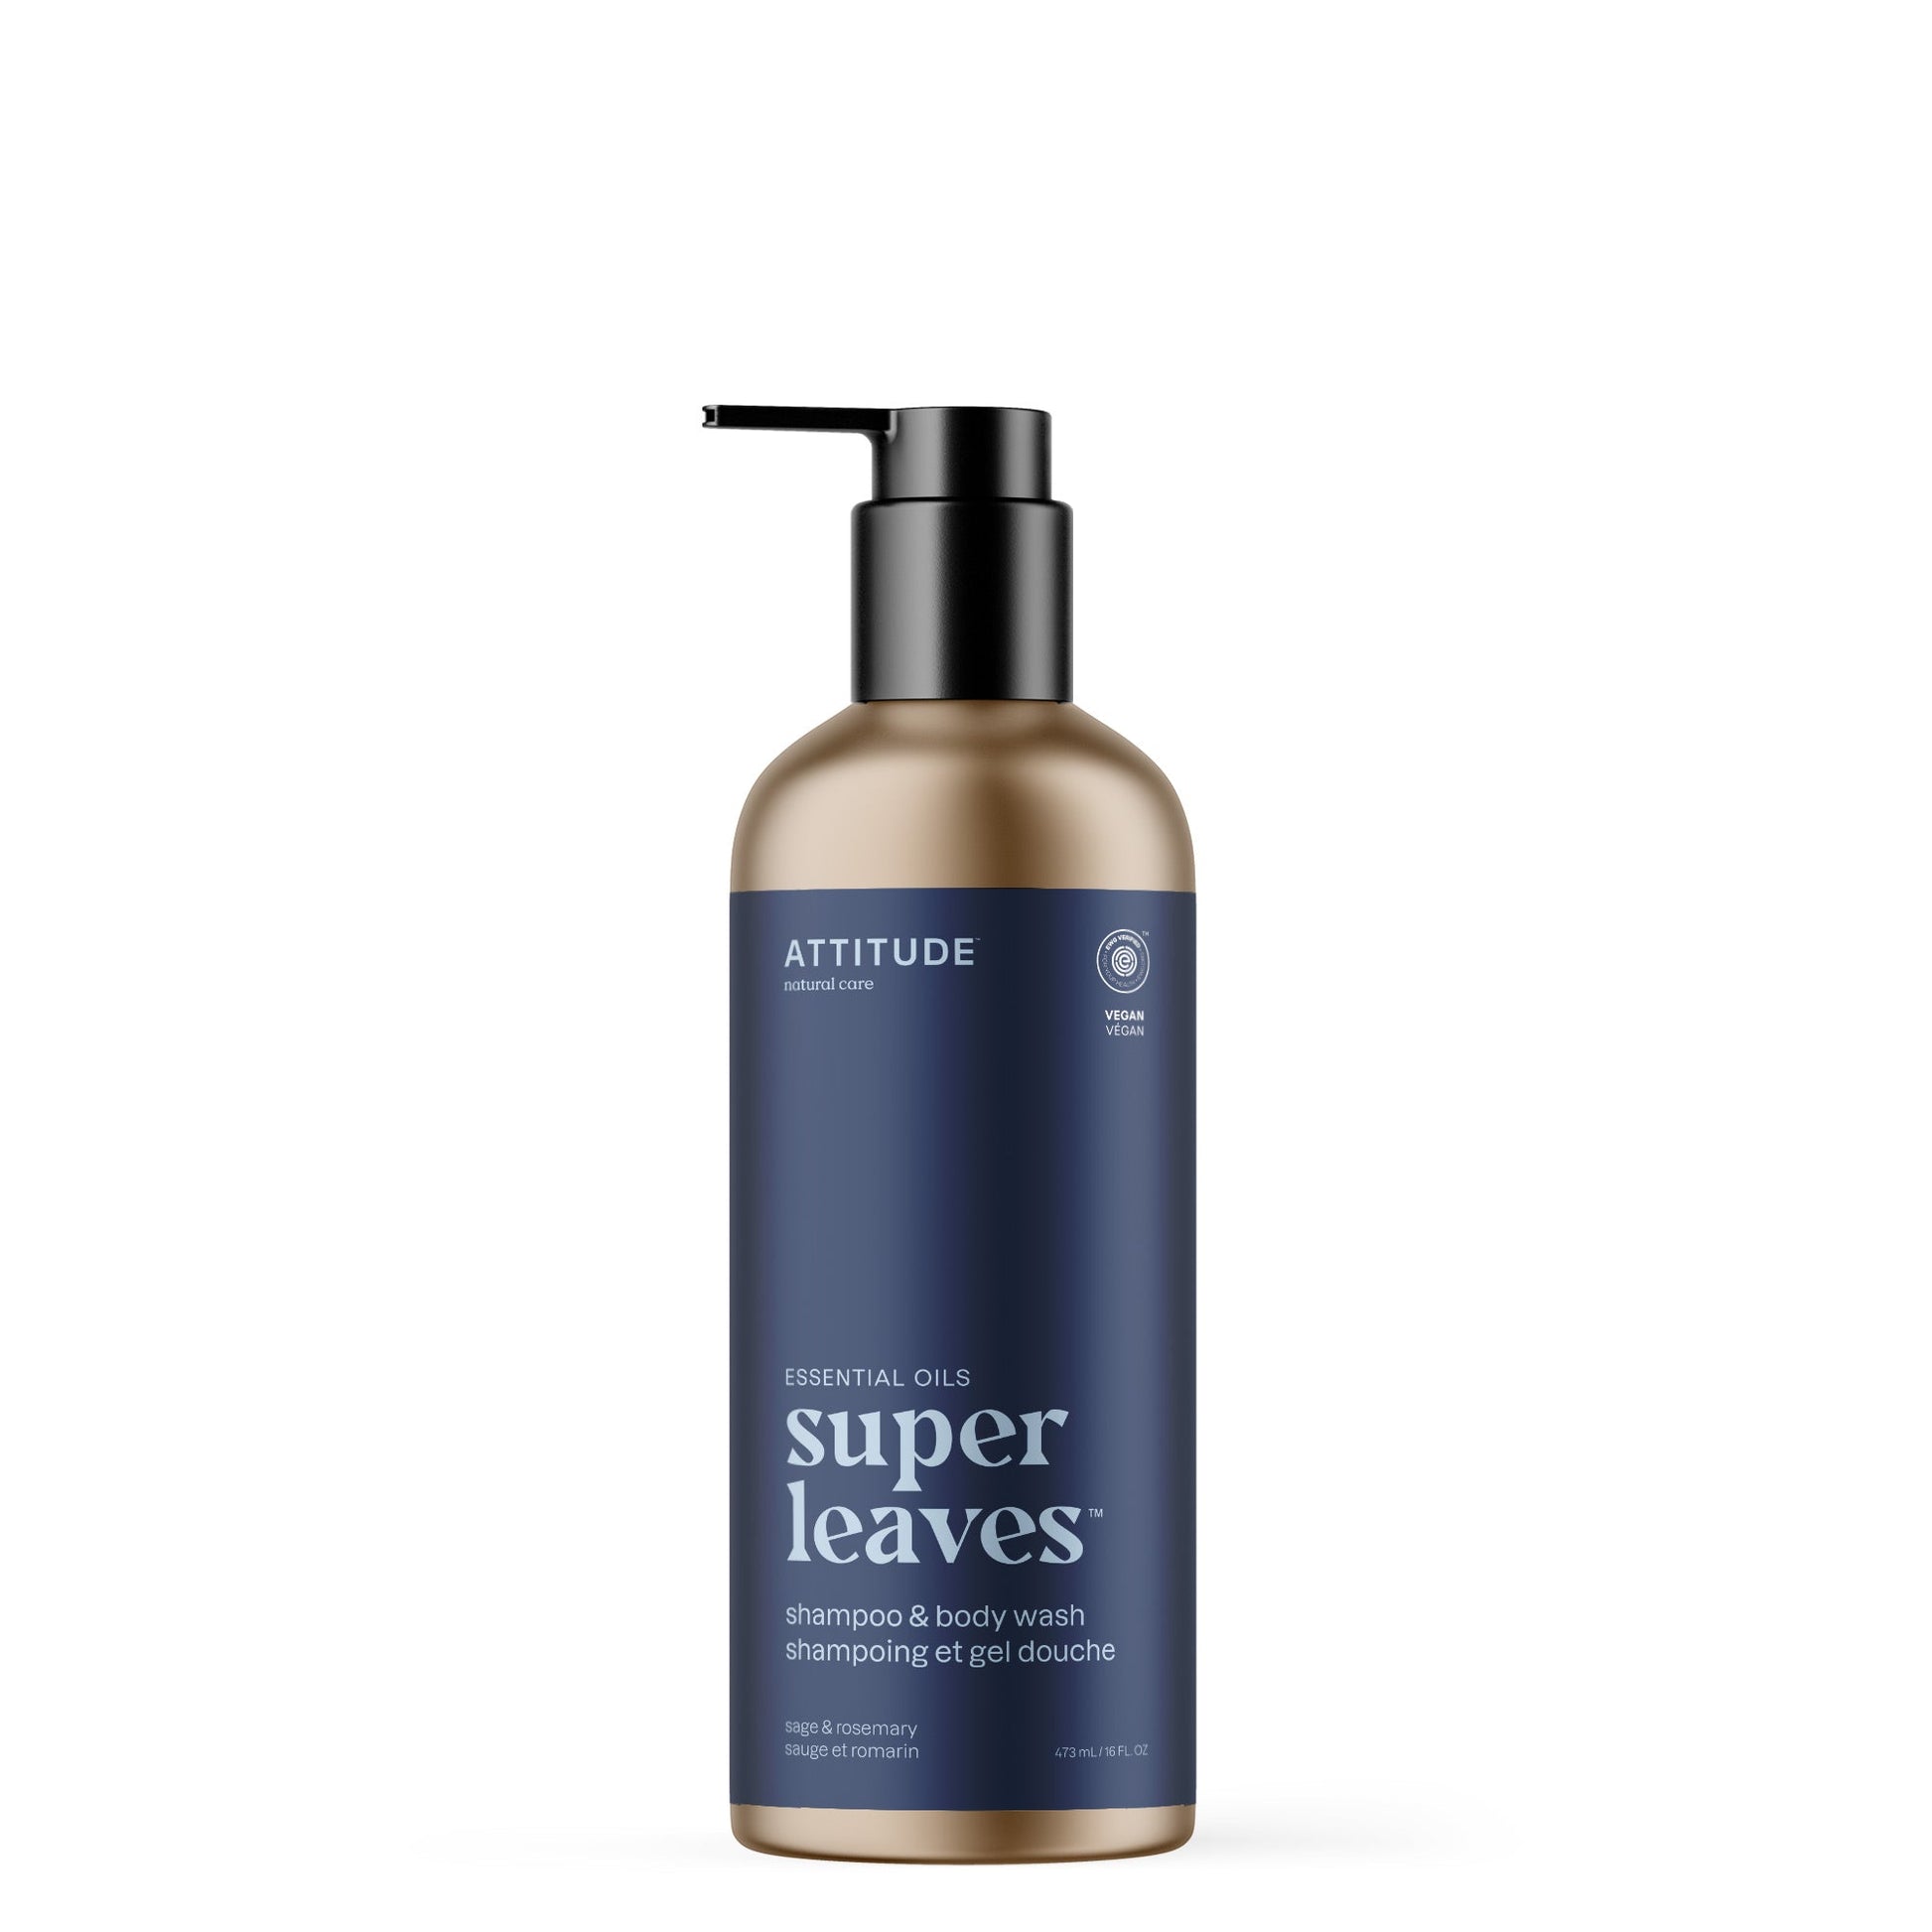 ATTITUDE Super Leaves Essential oil shampoo body wash Sage and rosemary 19005-btob_en?_main? 16 FL. OZ.